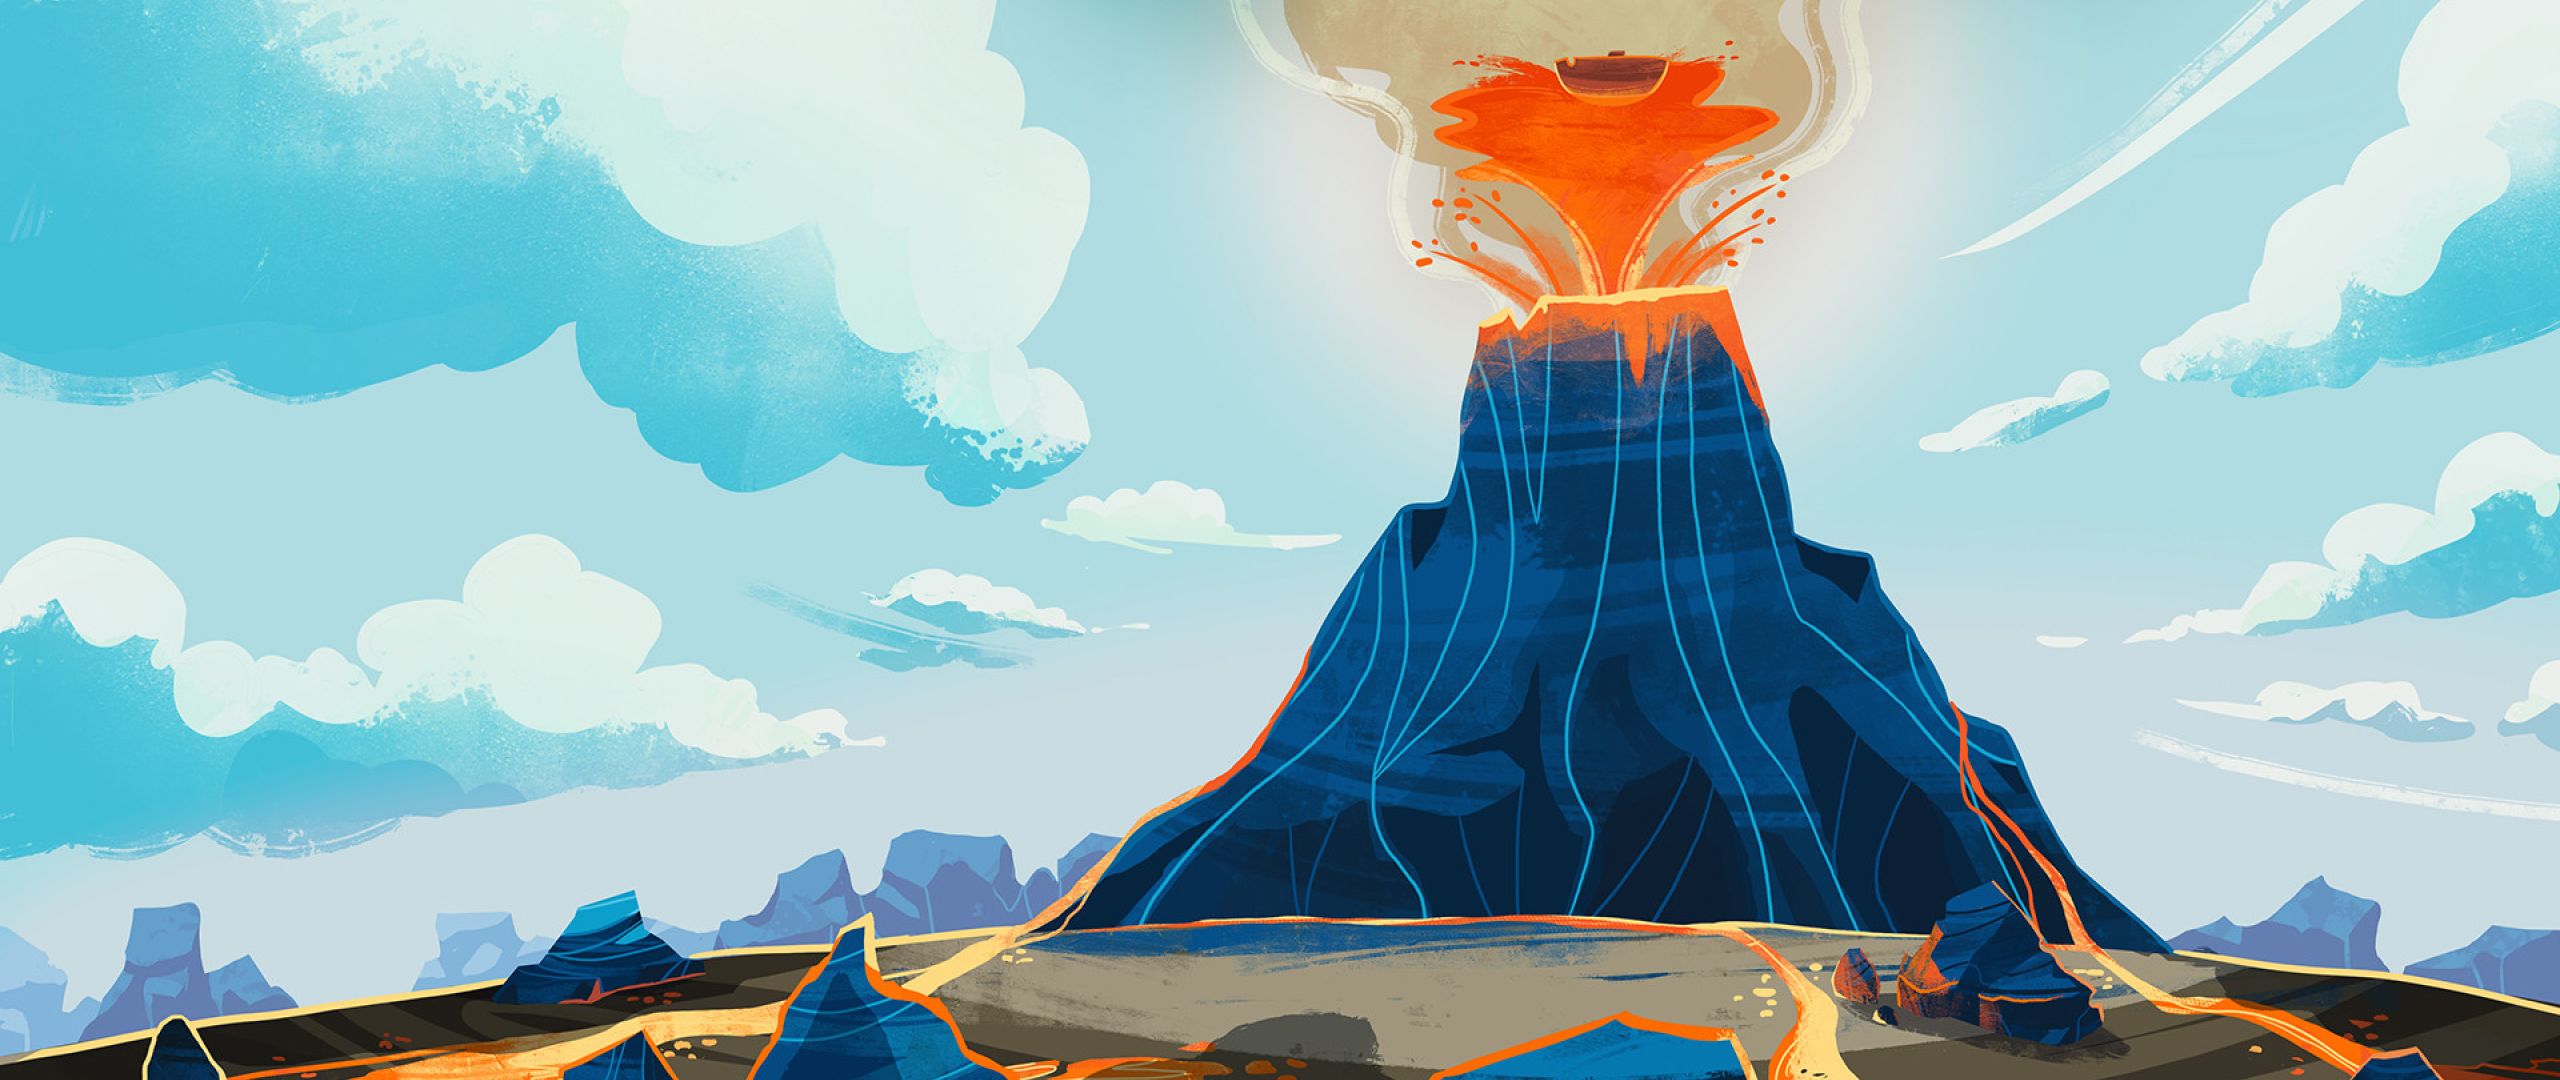 تصویر کارتونی از فوران مواد مذاب در کوه آتشفشان فعال فانتزی